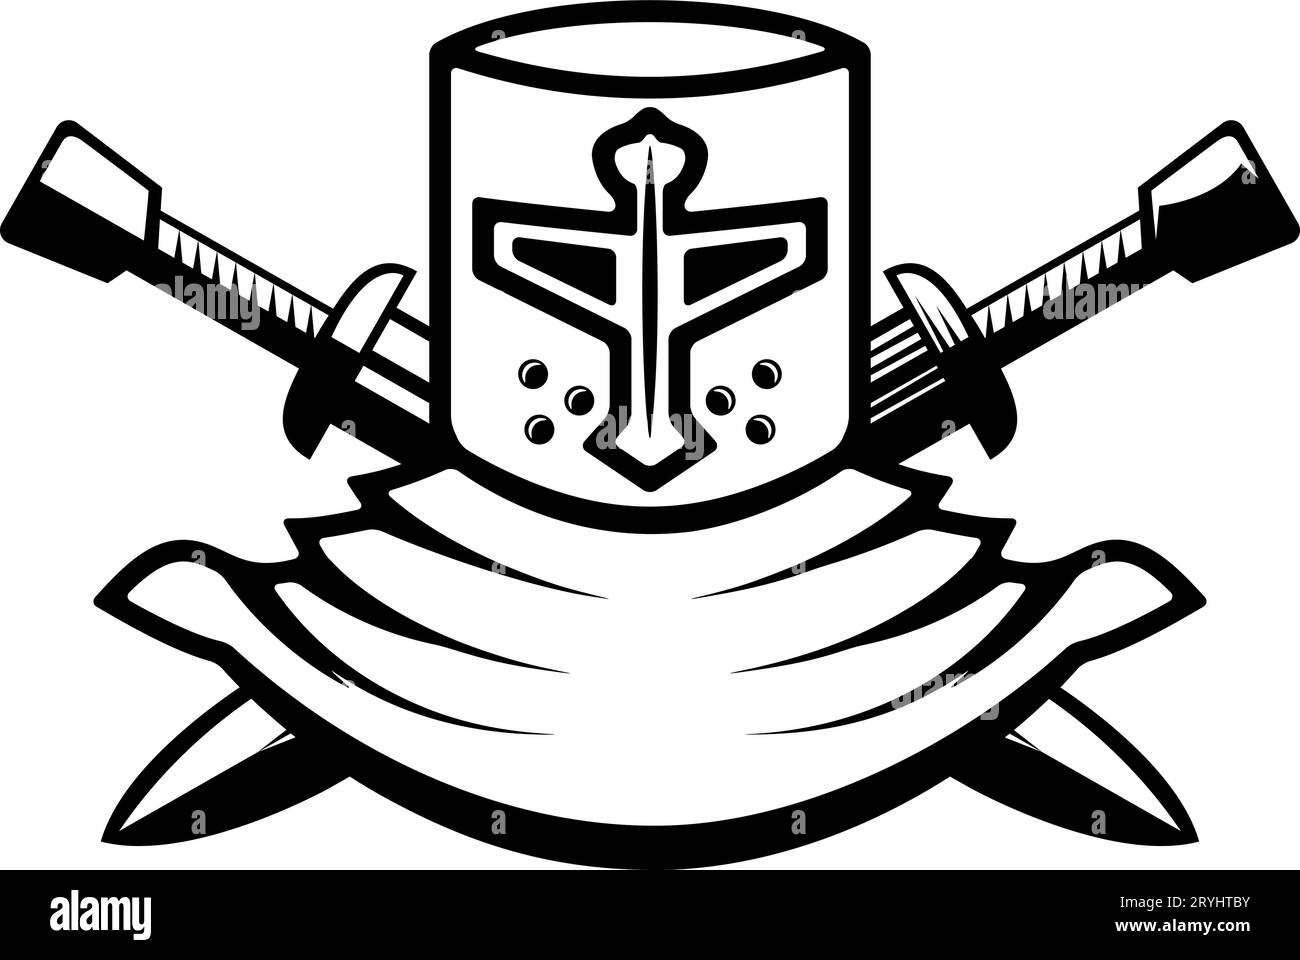 Knight helmet with crossed swords. Warrior helmet with swords. Design element Stock Vector